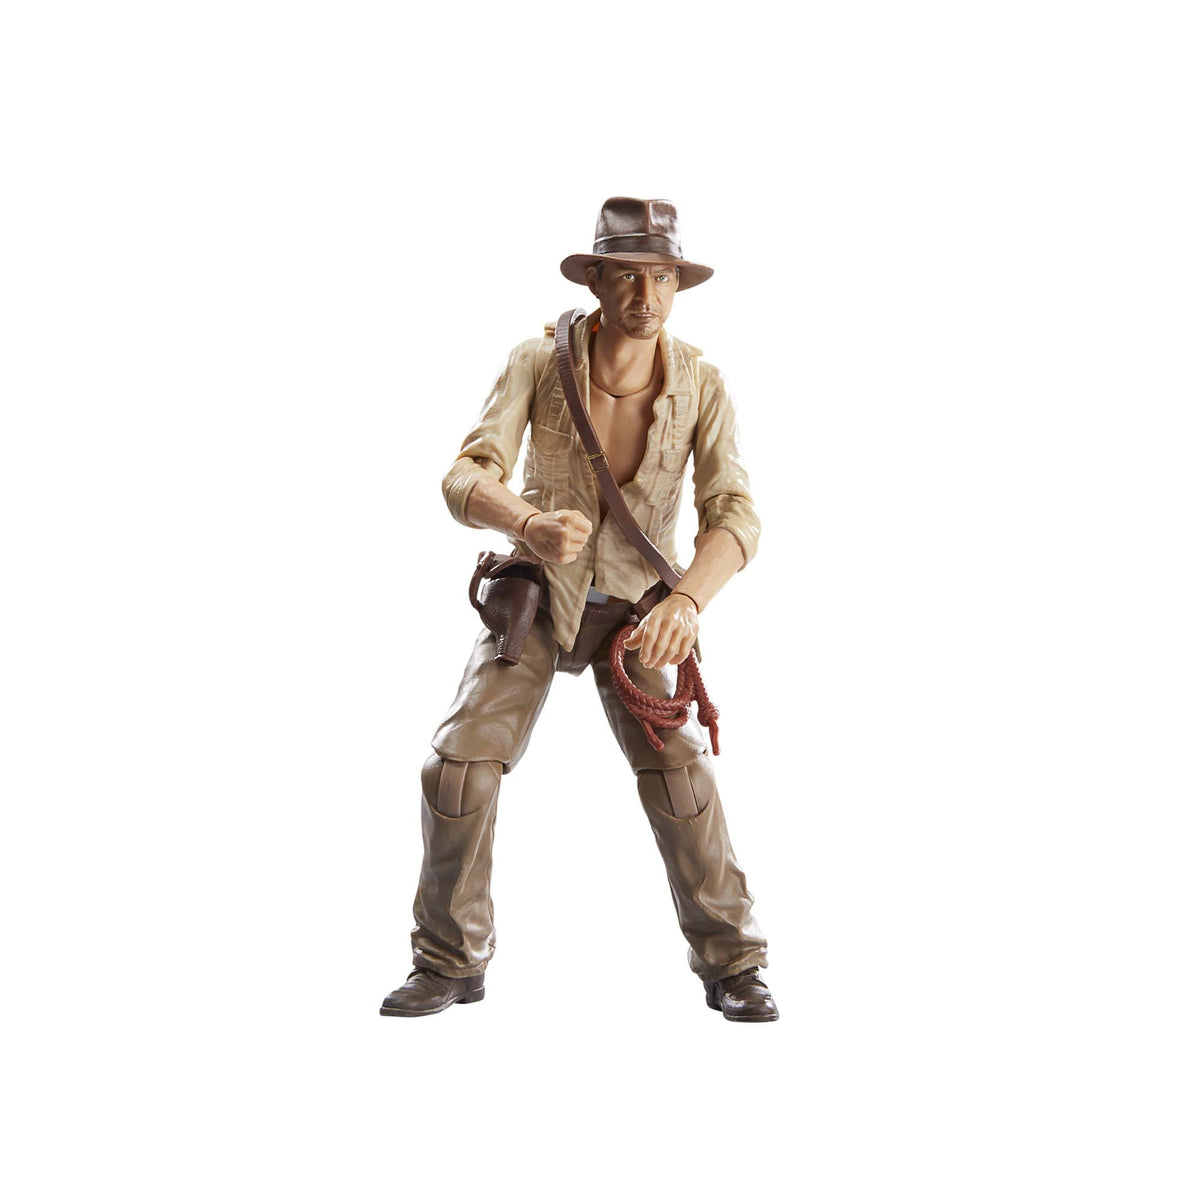 Indiana Jones 5 ganha pôsteres que apresentam os p